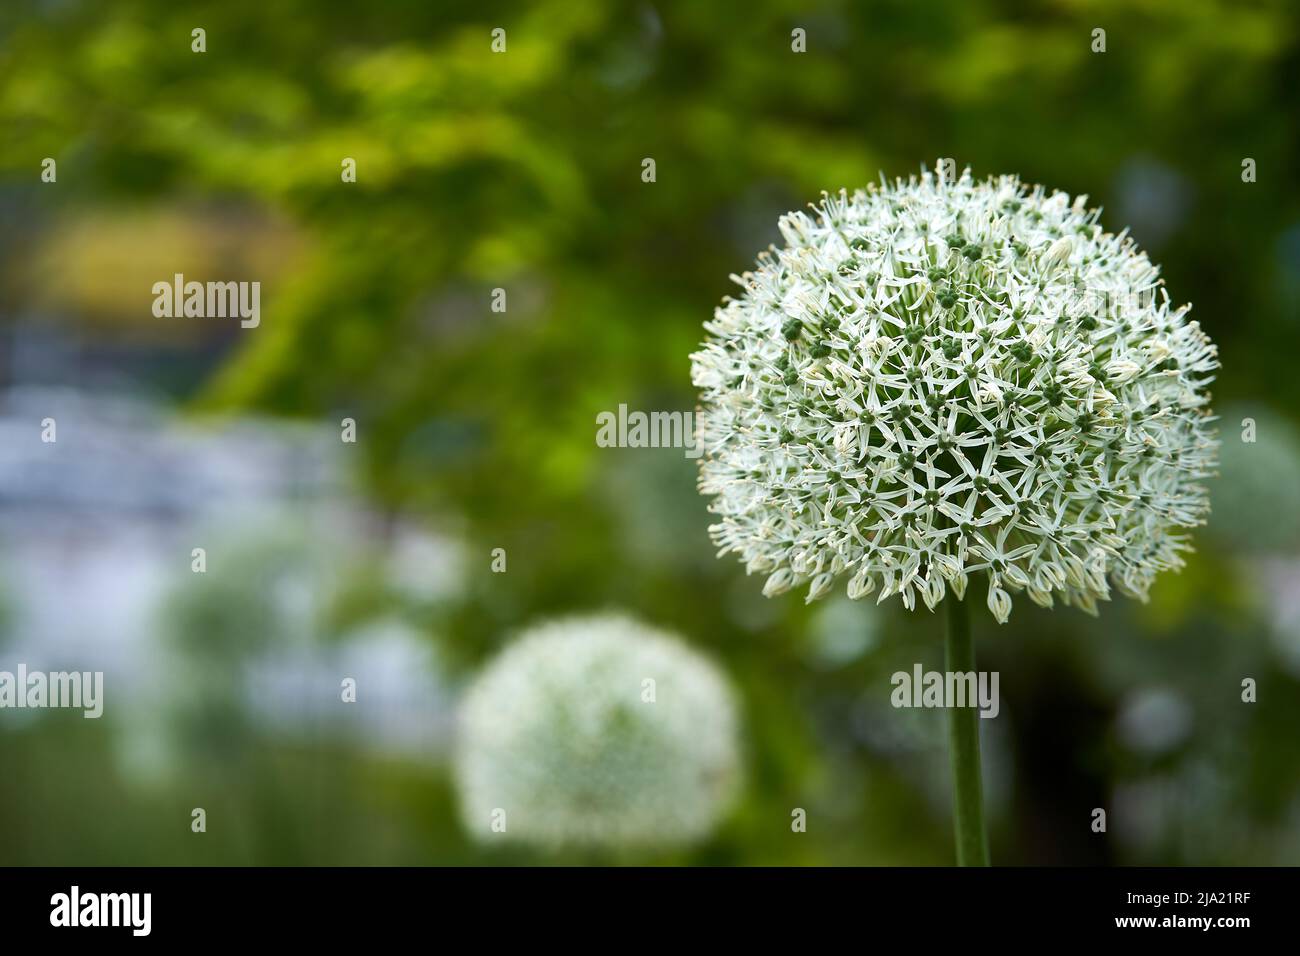 concentrez-vous sur la tête de fleur blanche d'allium en premier plan avec une mise au point douce en vert en arrière-plan Banque D'Images